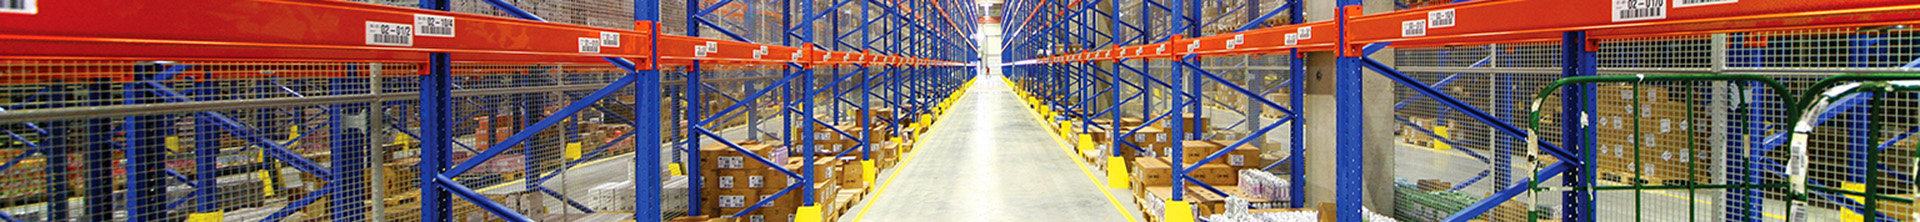 Soluzioni per la pulizia dei pavimenti Tennant per il settore della logistica e del magazzinaggio